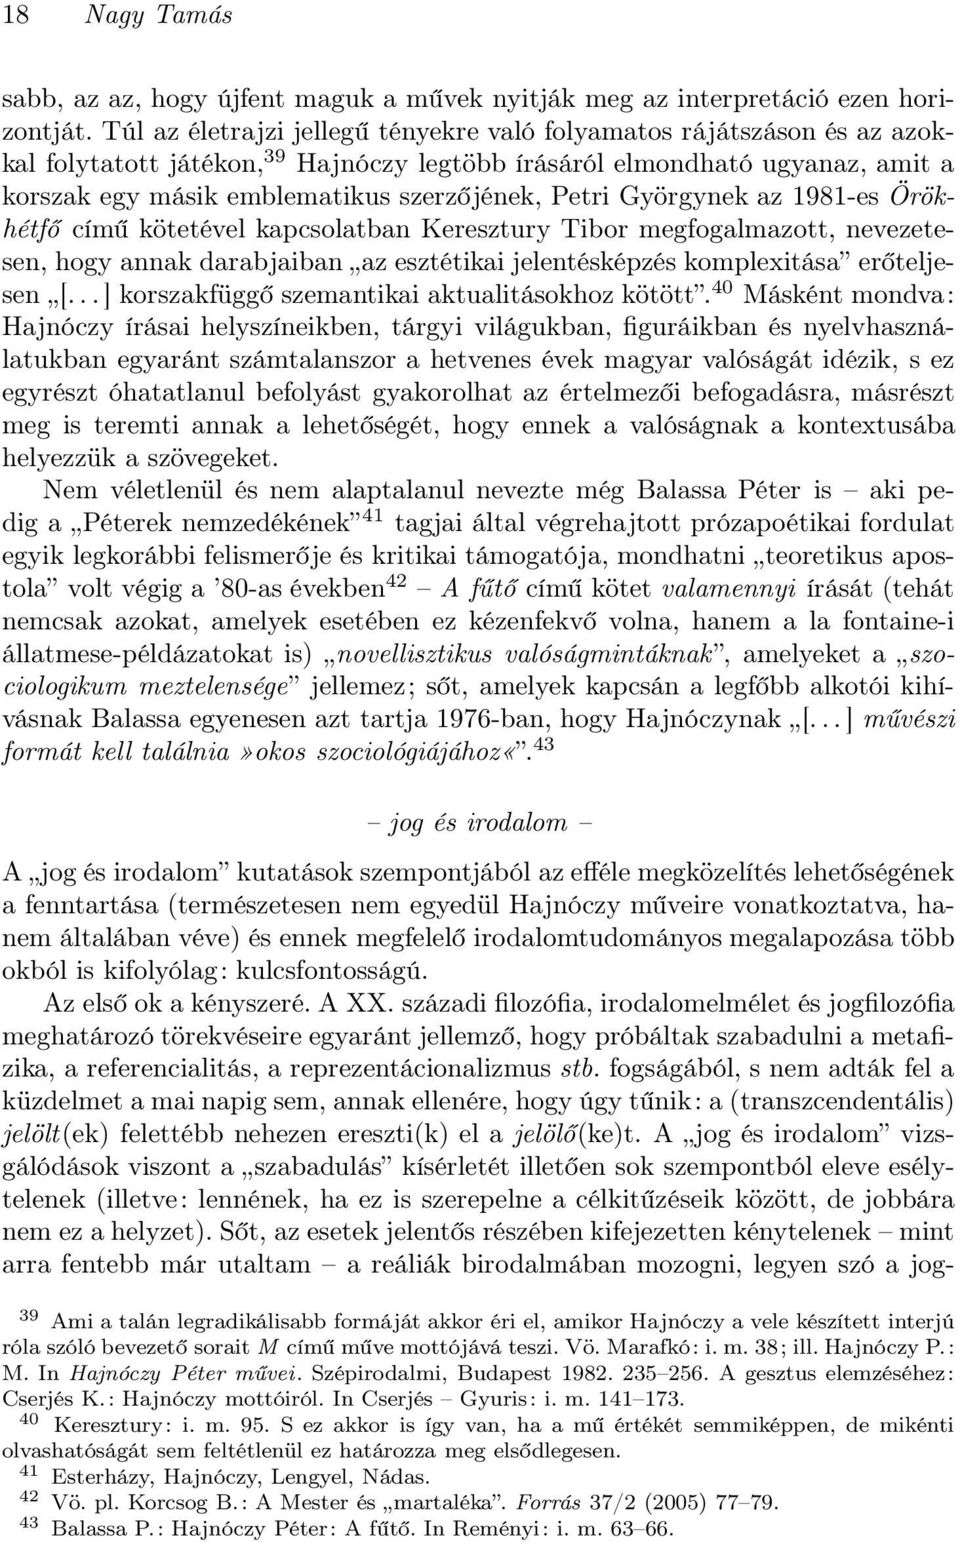 Petri Györgynek az 1981-es Örökhétfő című kötetével kapcsolatban Keresztury Tibor megfogalmazott, nevezetesen, hogy annak darabjaiban az esztétikai jelentésképzés komplexitása erőteljesen [.